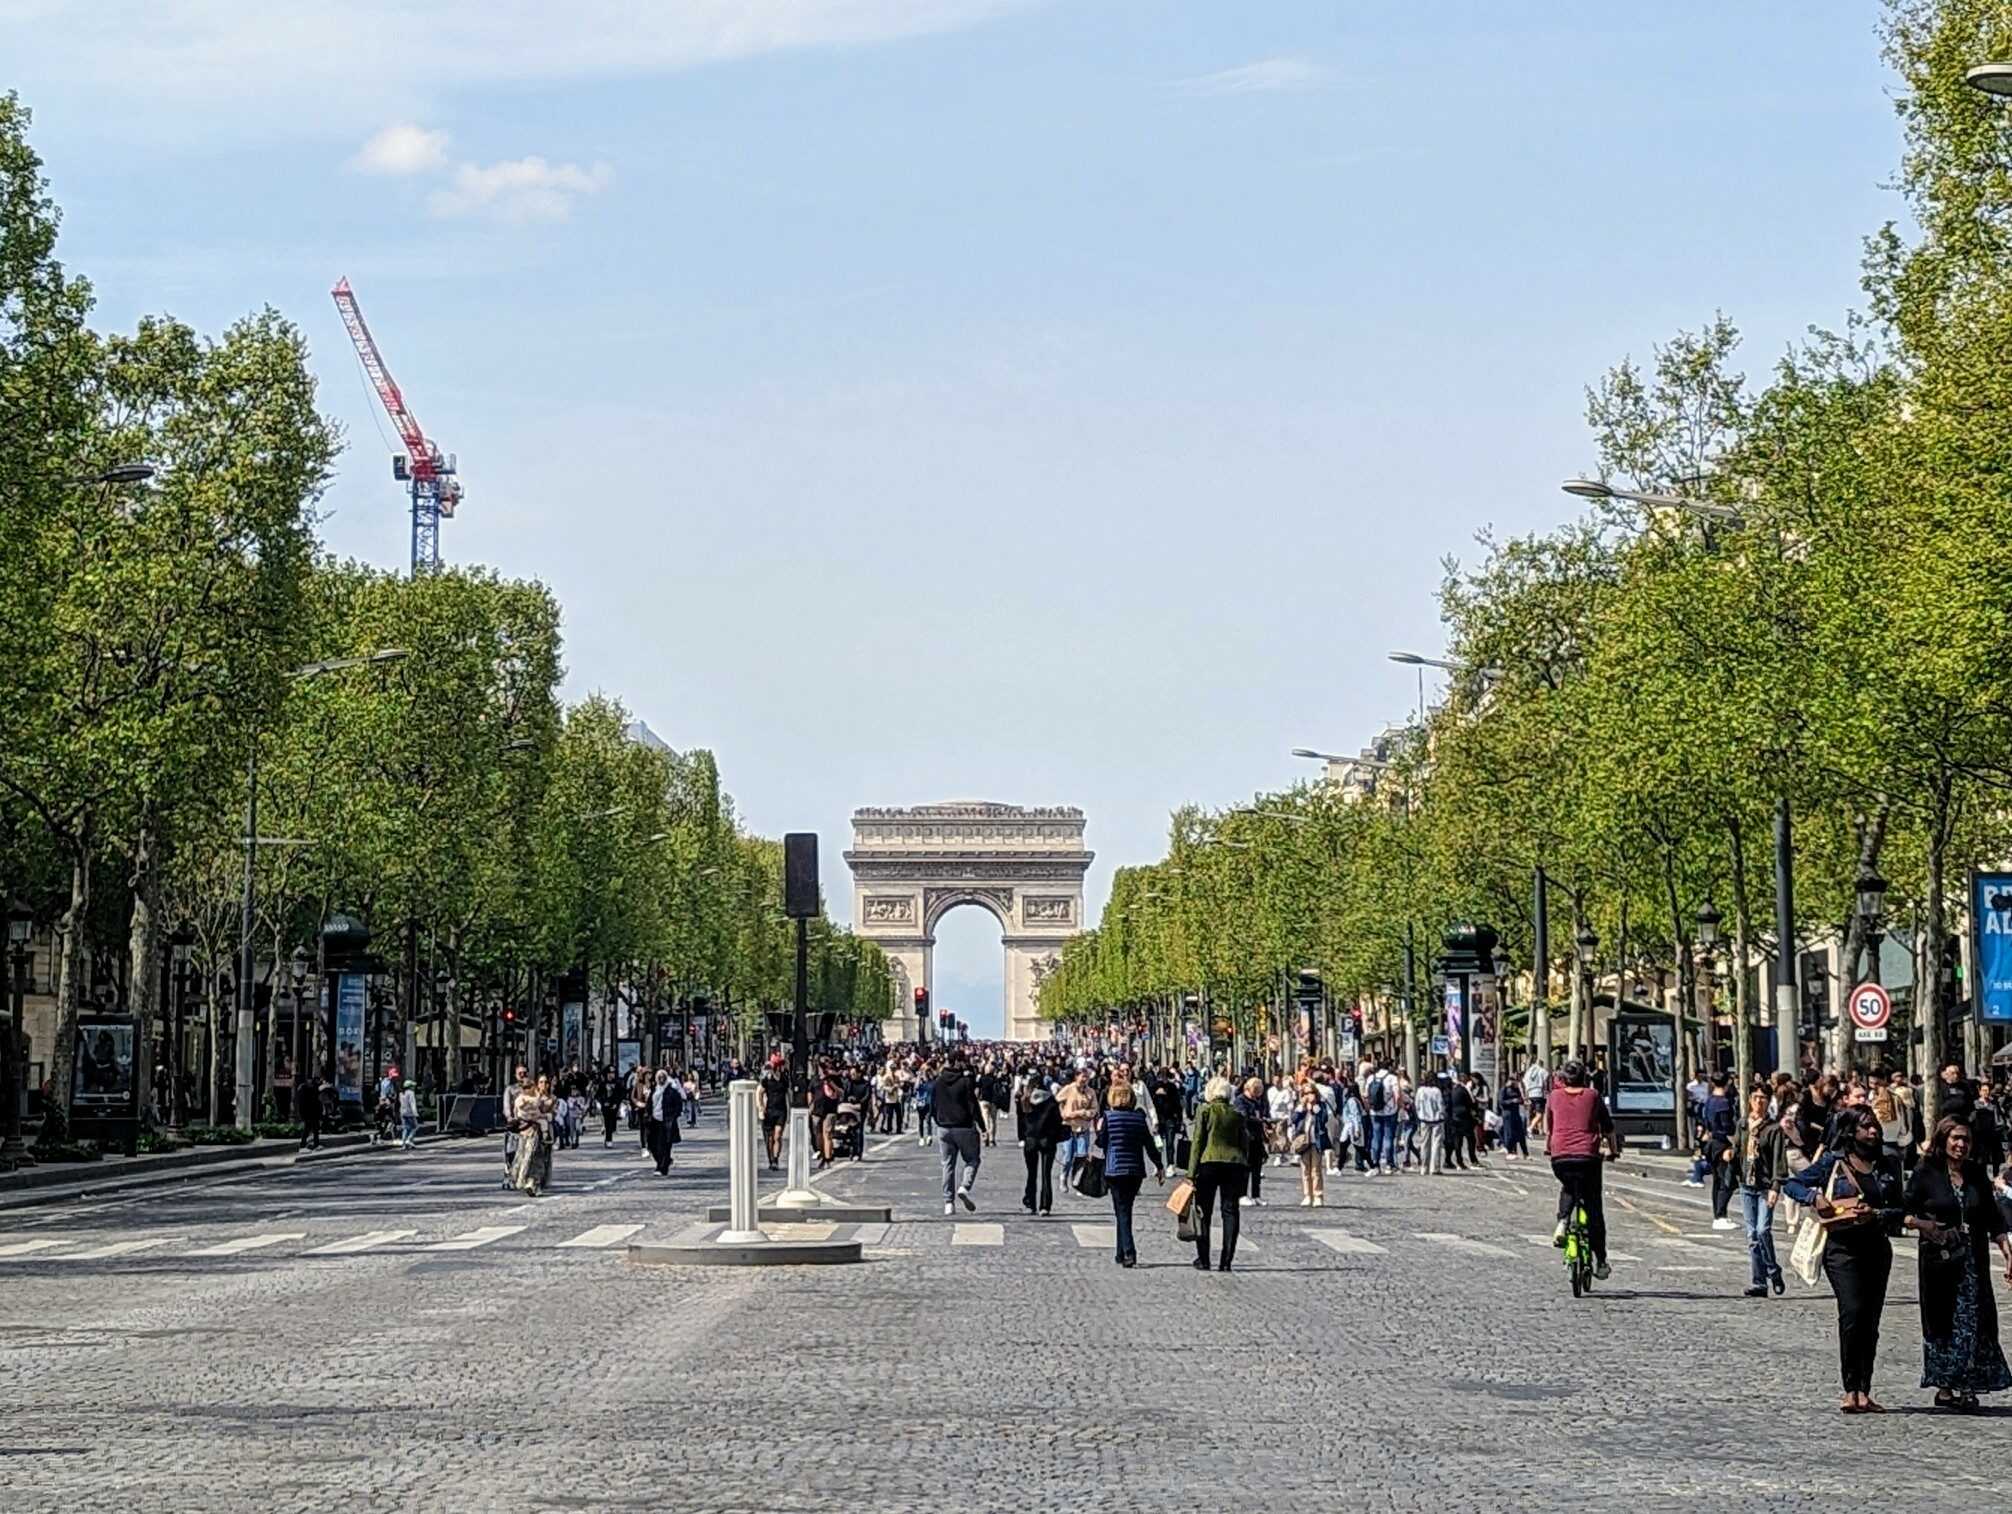 Pedestrians walking up the Champs-Elysées towards the Arc de Triomphe on a car-free Sunday.